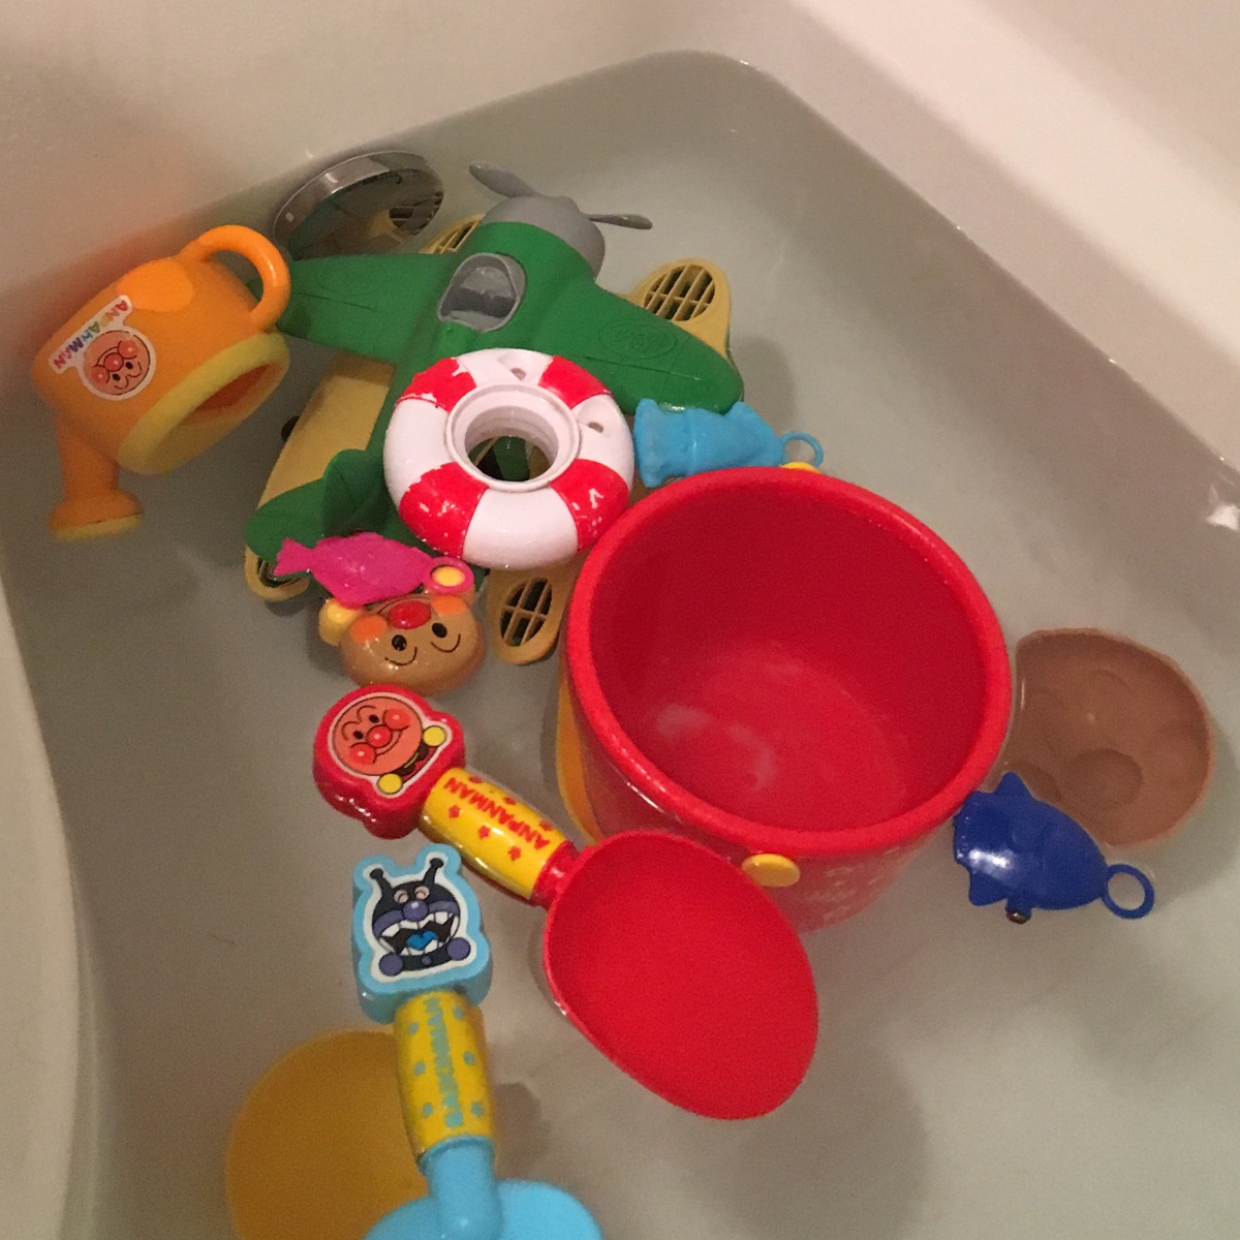  残り湯で簡単お手入れ！気になるお風呂のおもちゃの汚れは○○を使うと取れやすくなる！ 